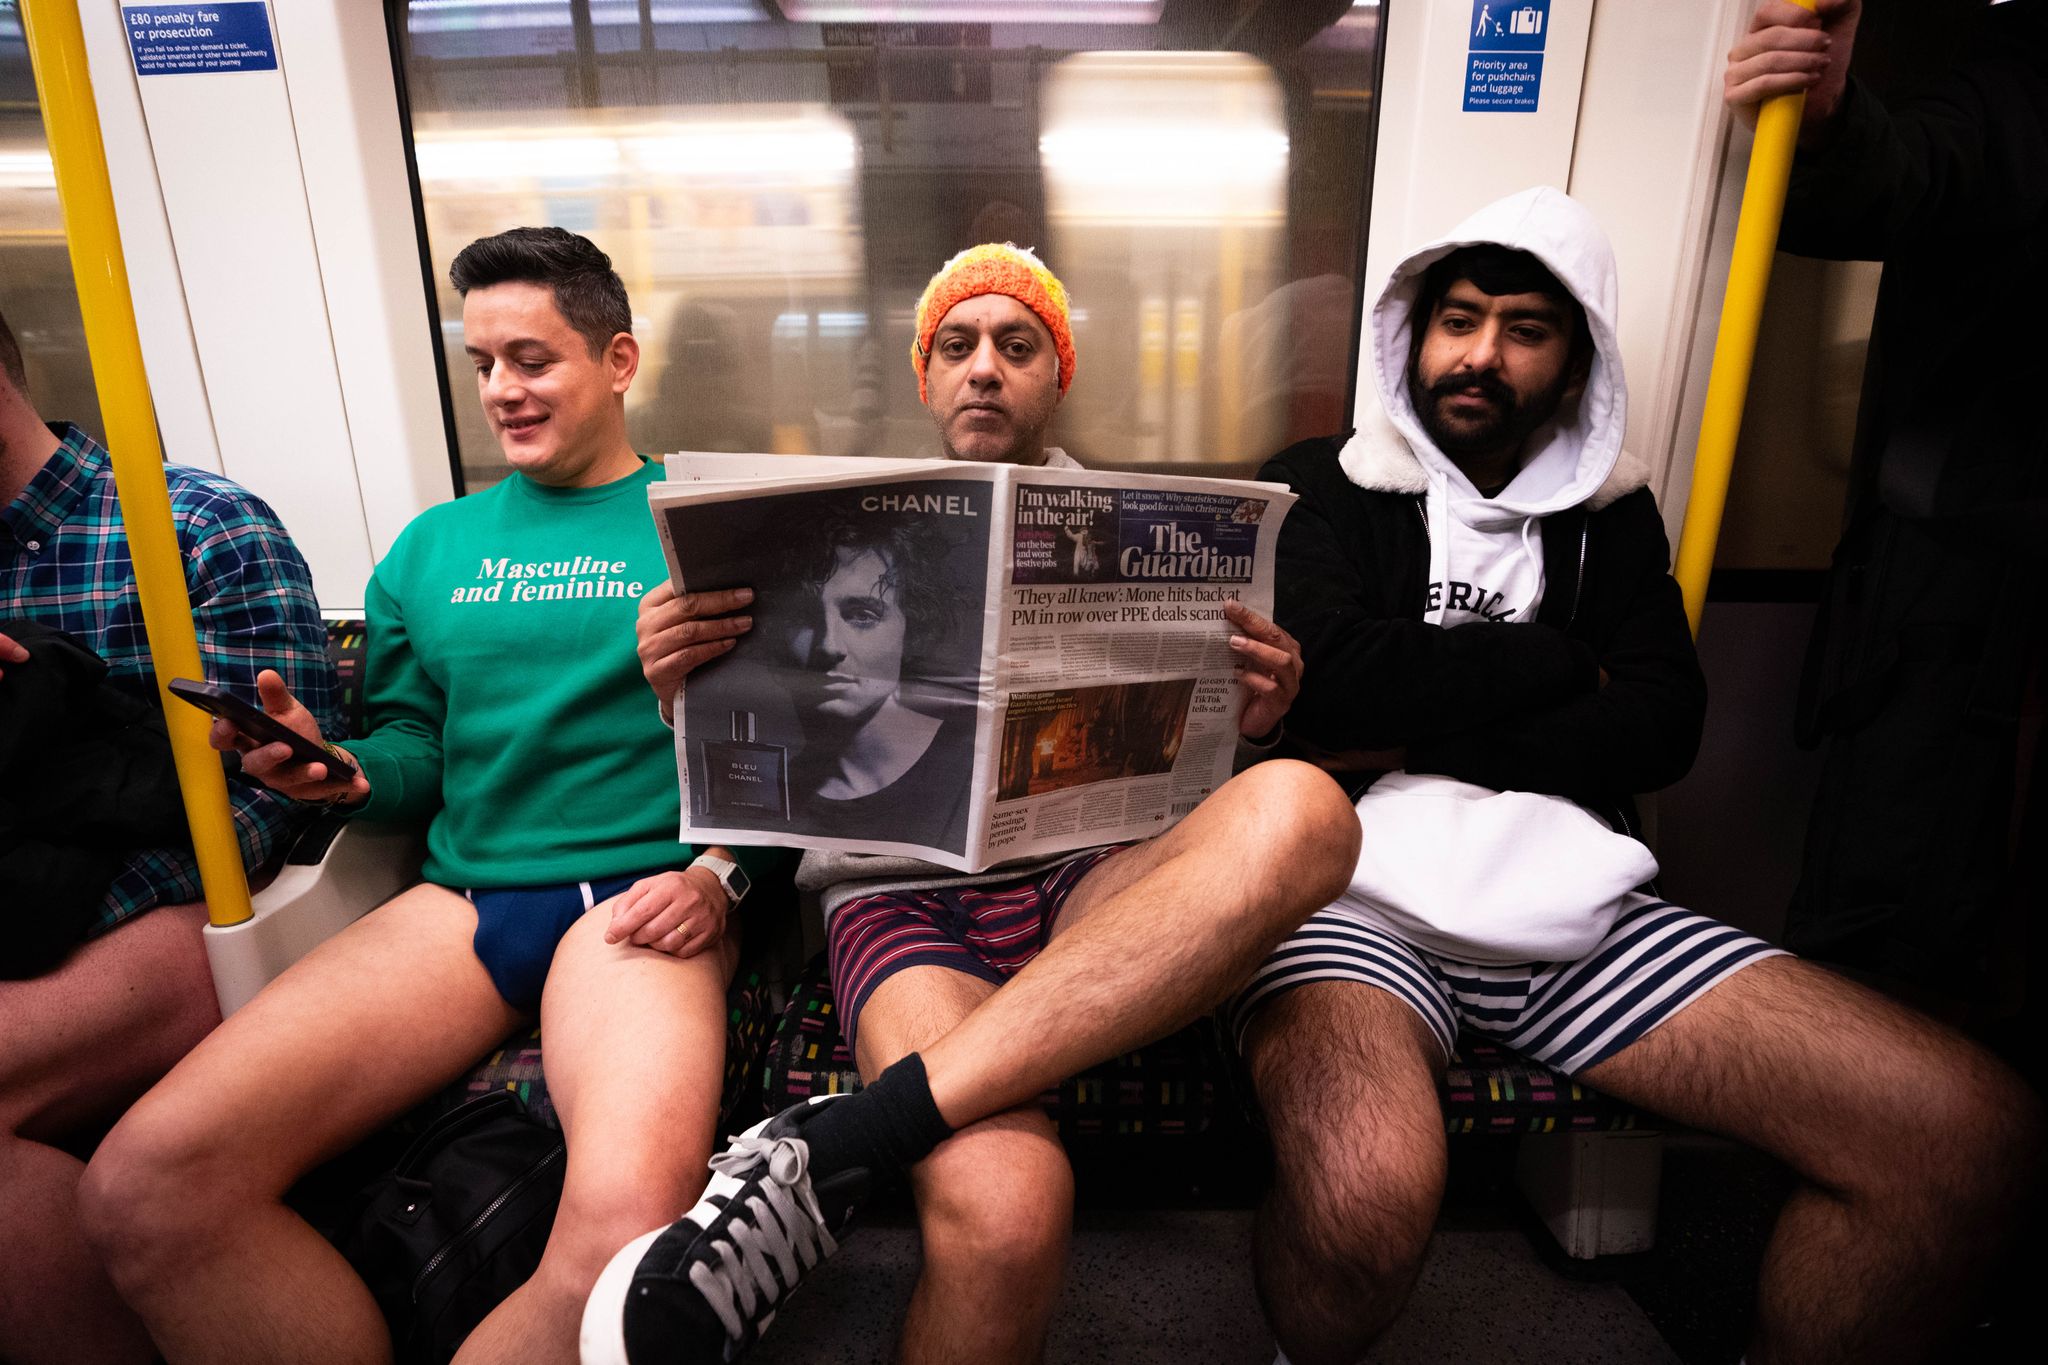 Ungewöhnliche Szene in der Londoner U-Bahn: Menschen fahren ohne Hose mit der Circle Line Tube und nehmen damit an der jährlichen «No Trousers Tube Ride» teil.